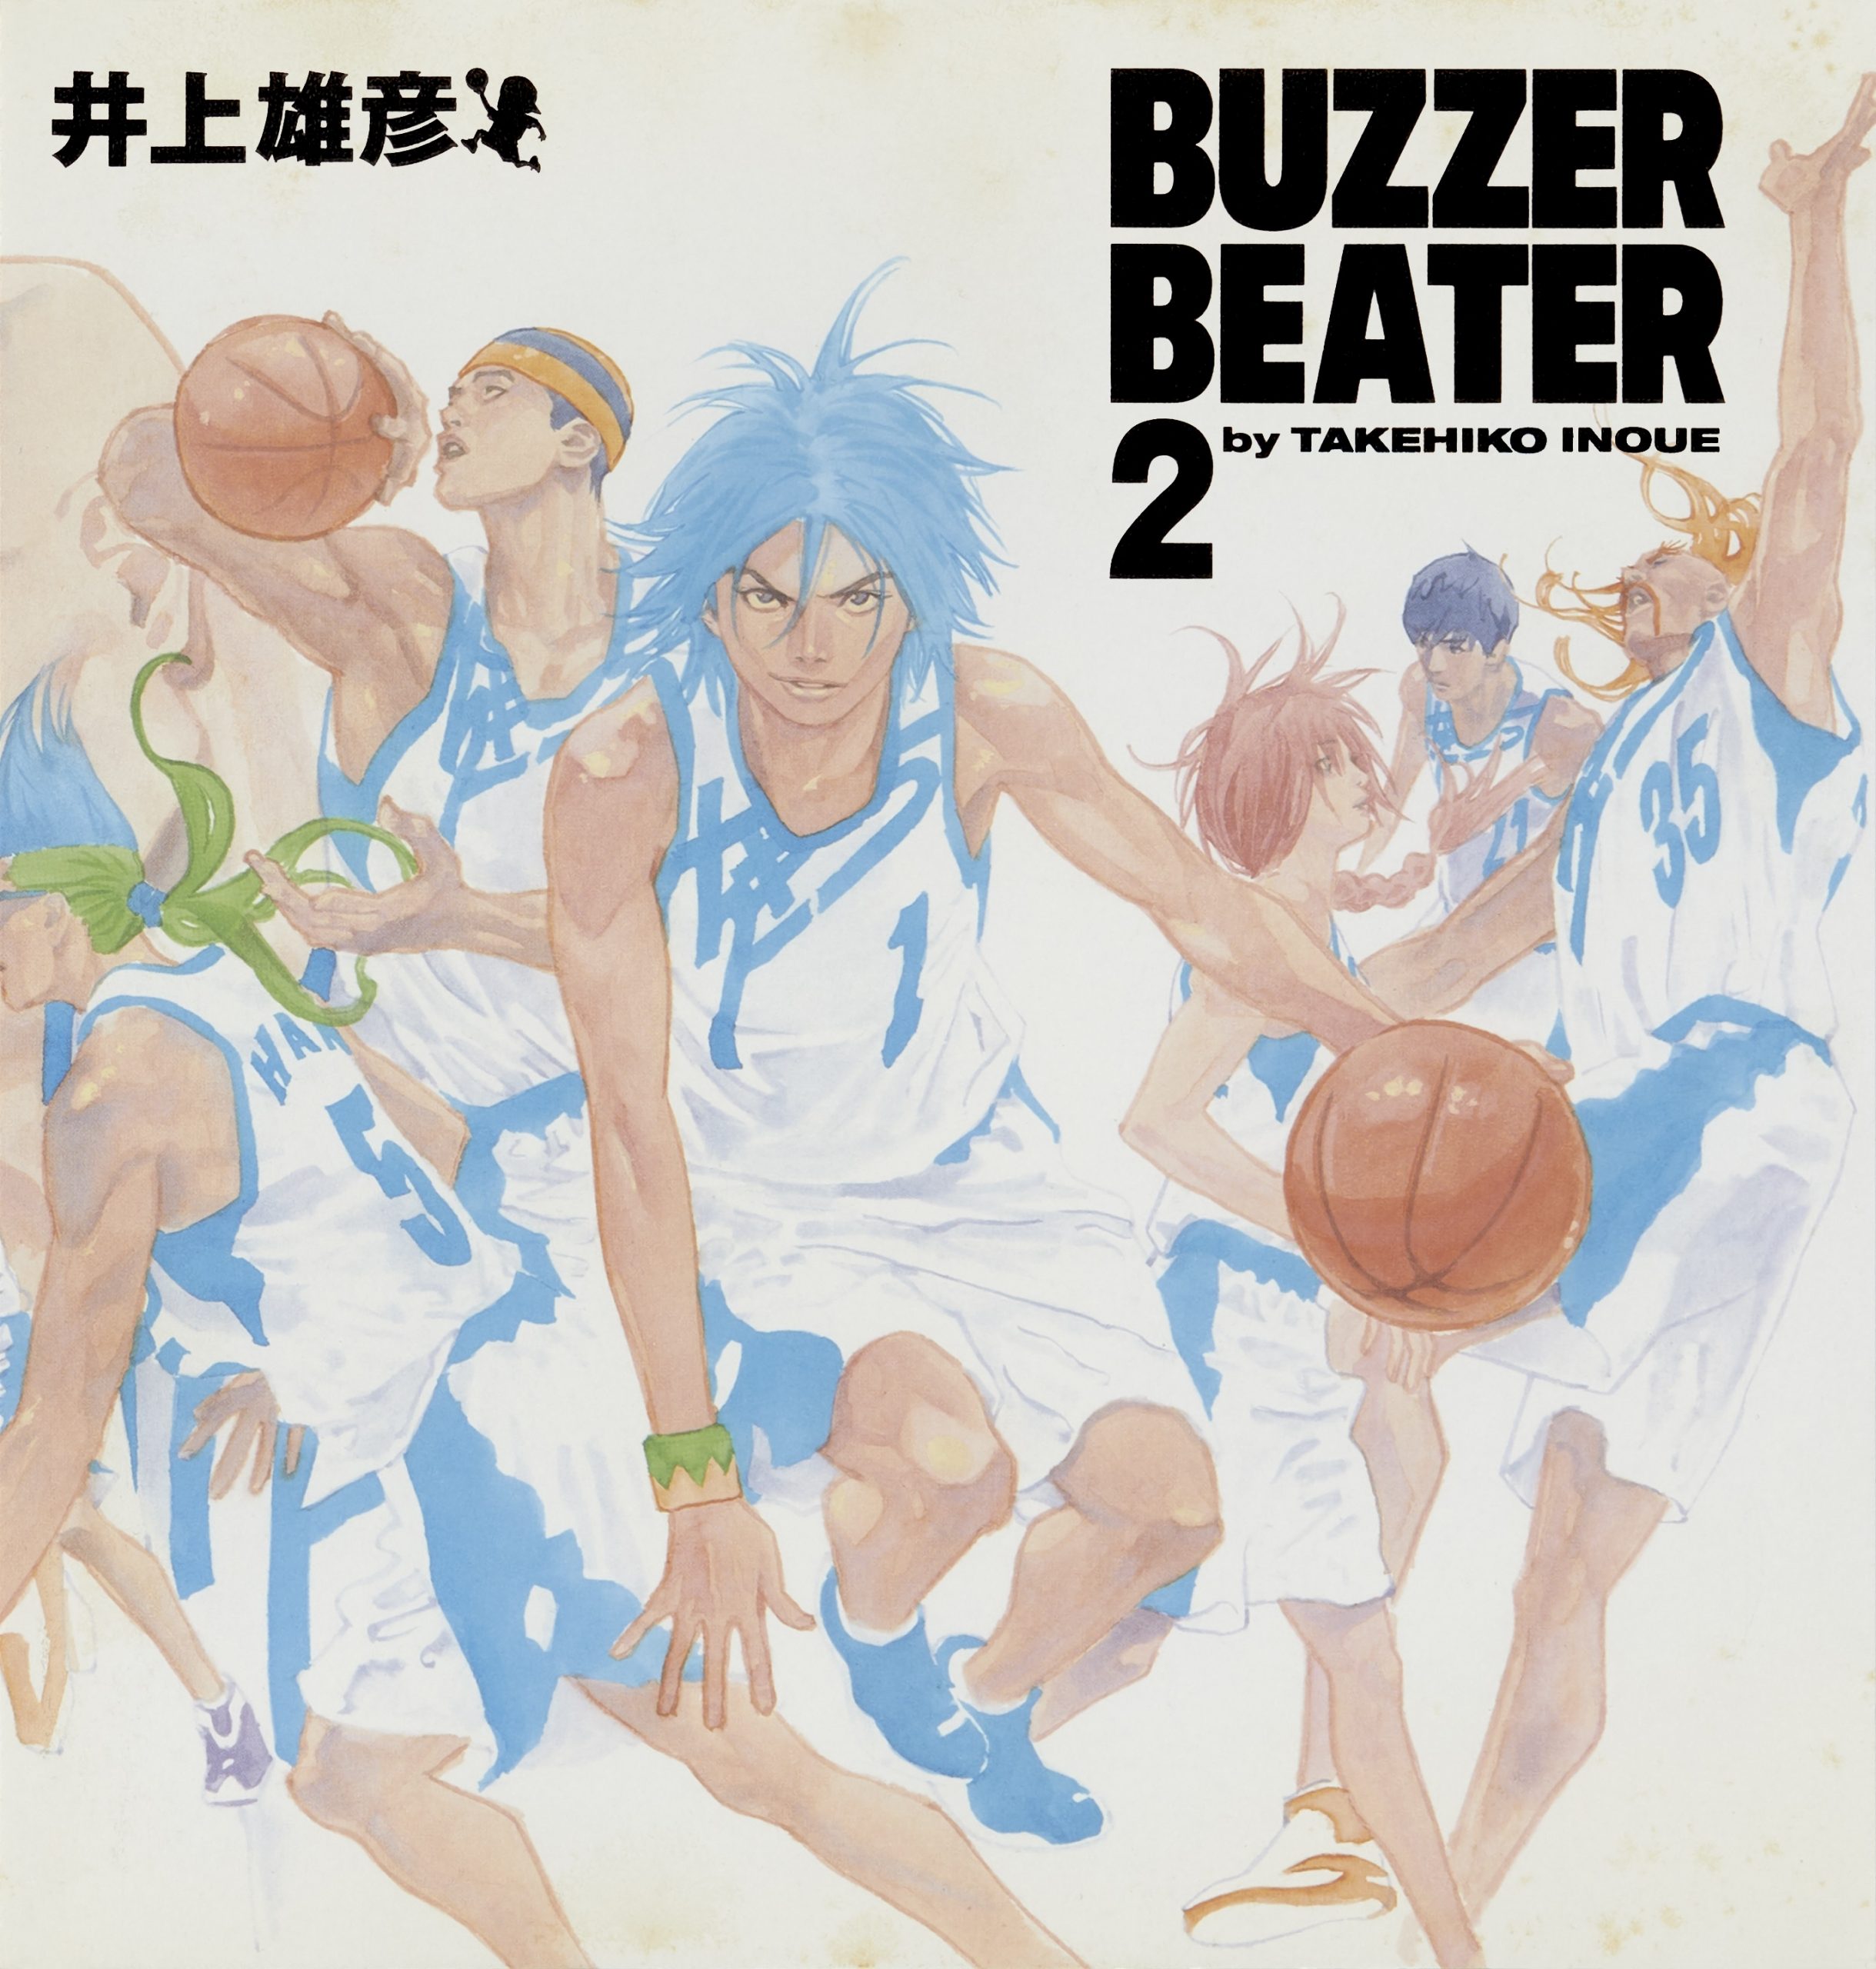 Manga Planet Licenses Takehiko Inoue's BUZZER BEATER Manga